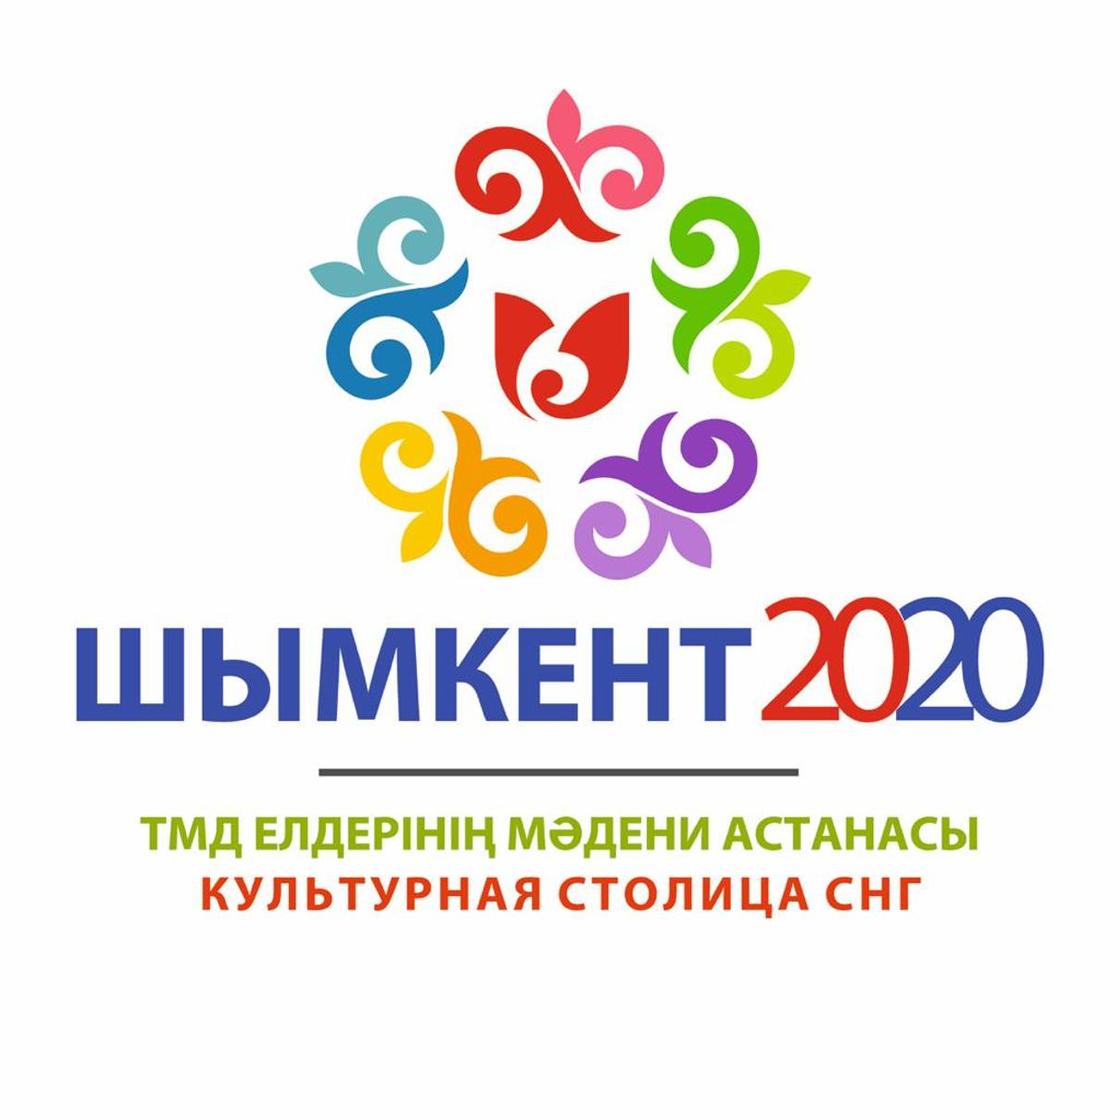 Шымкент приглашает на церемонию открытия года культурной столицы СНГ-2020